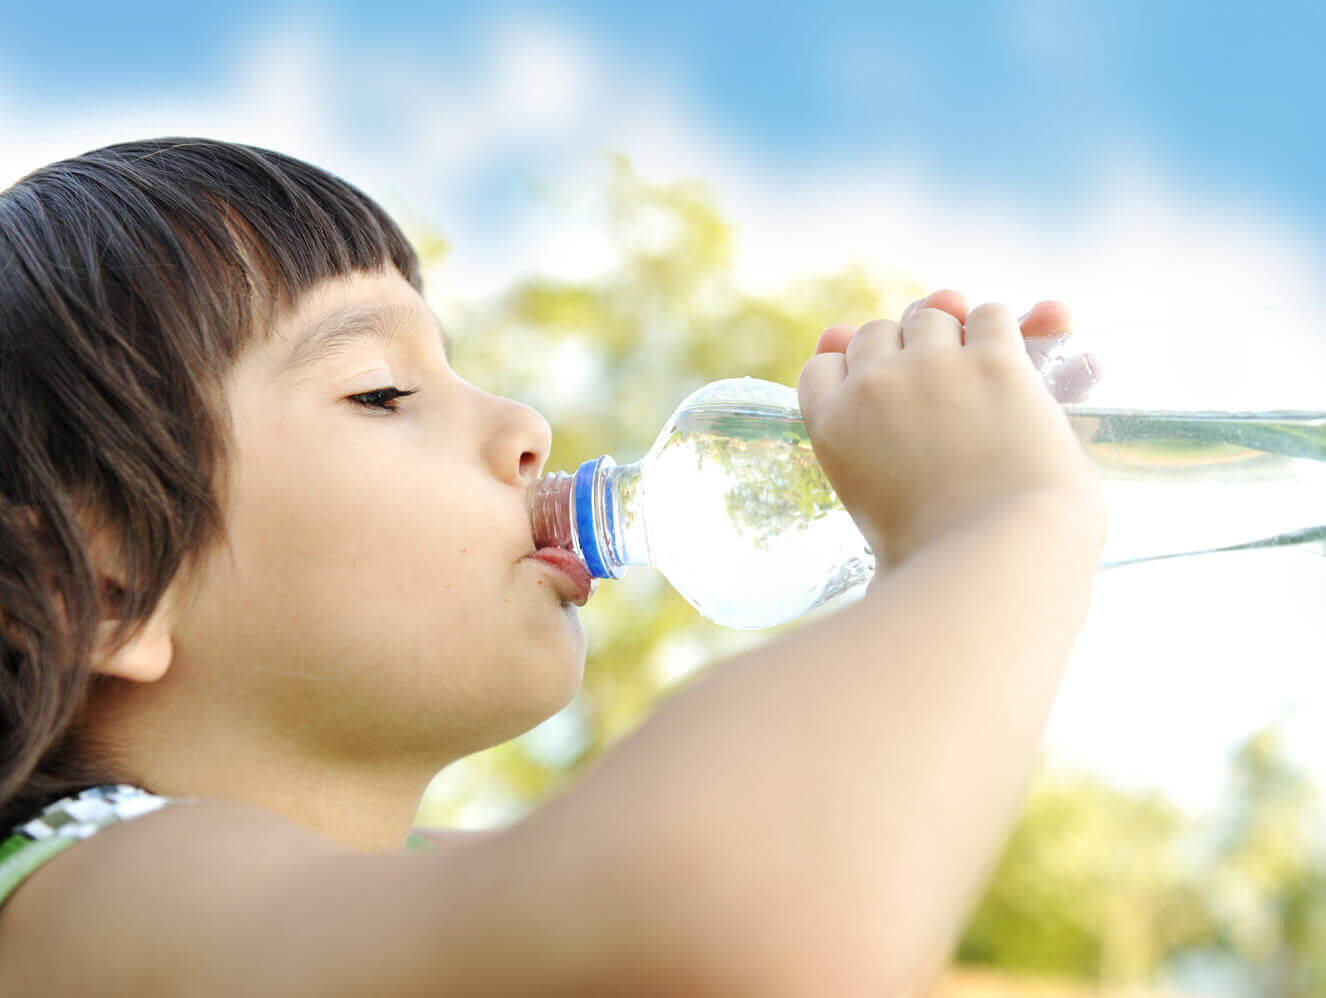 فوائد الماء للأطفال